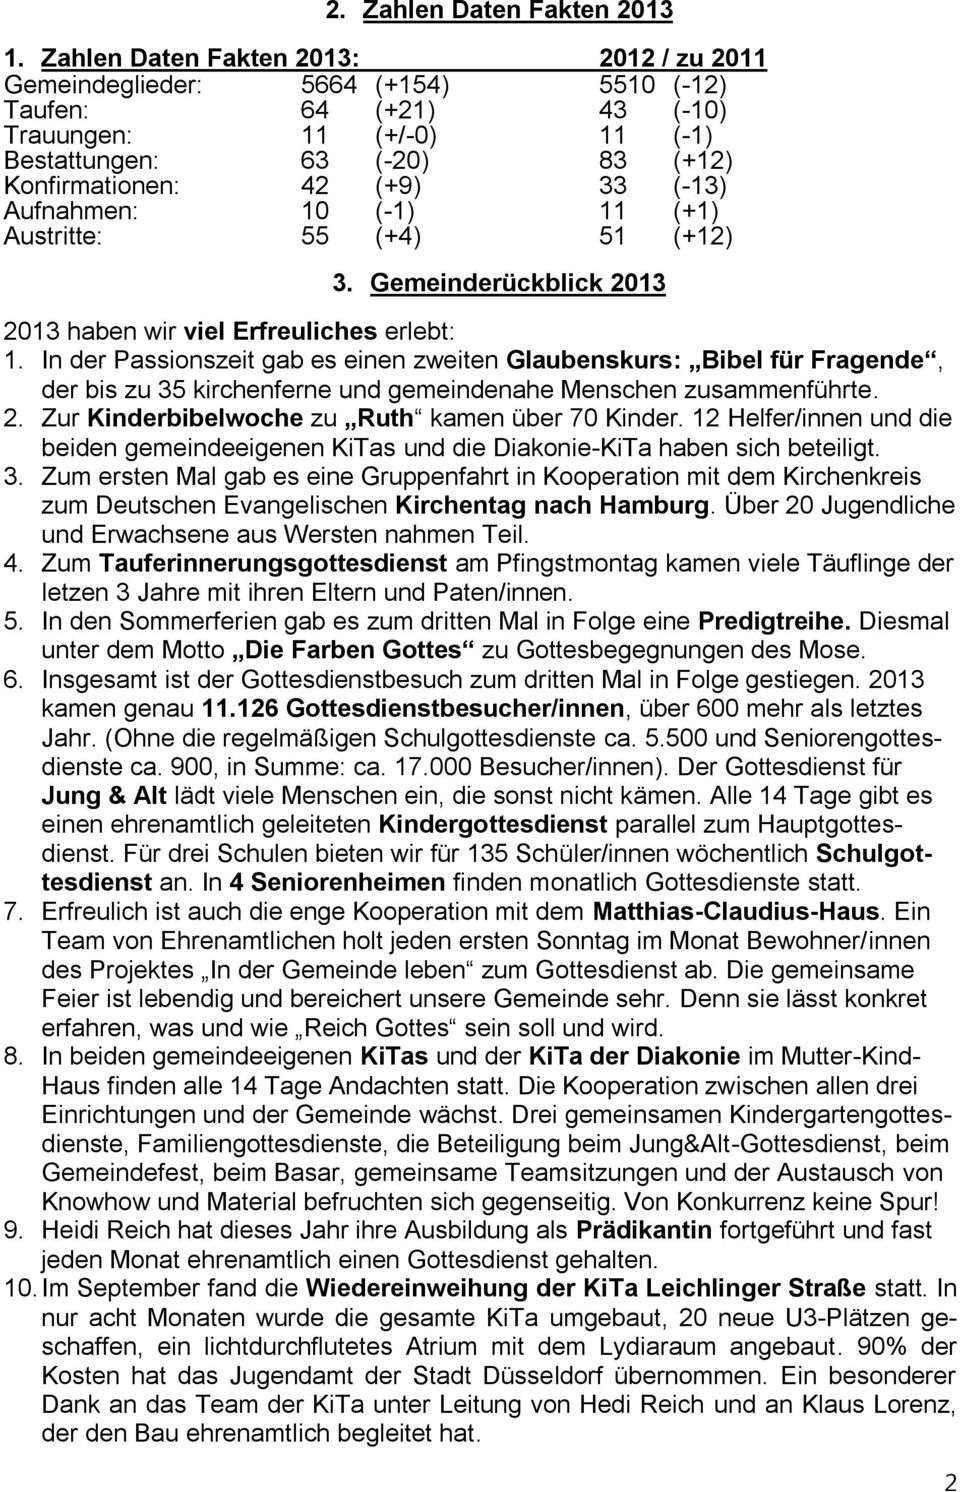 (-13) Aufnahmen: 10 (-1) 11 (+1) Austritte: 55 (+4) 51 (+12) 3. Gemeinderückblick 2013 2013 haben wir viel Erfreuliches erlebt: 1.